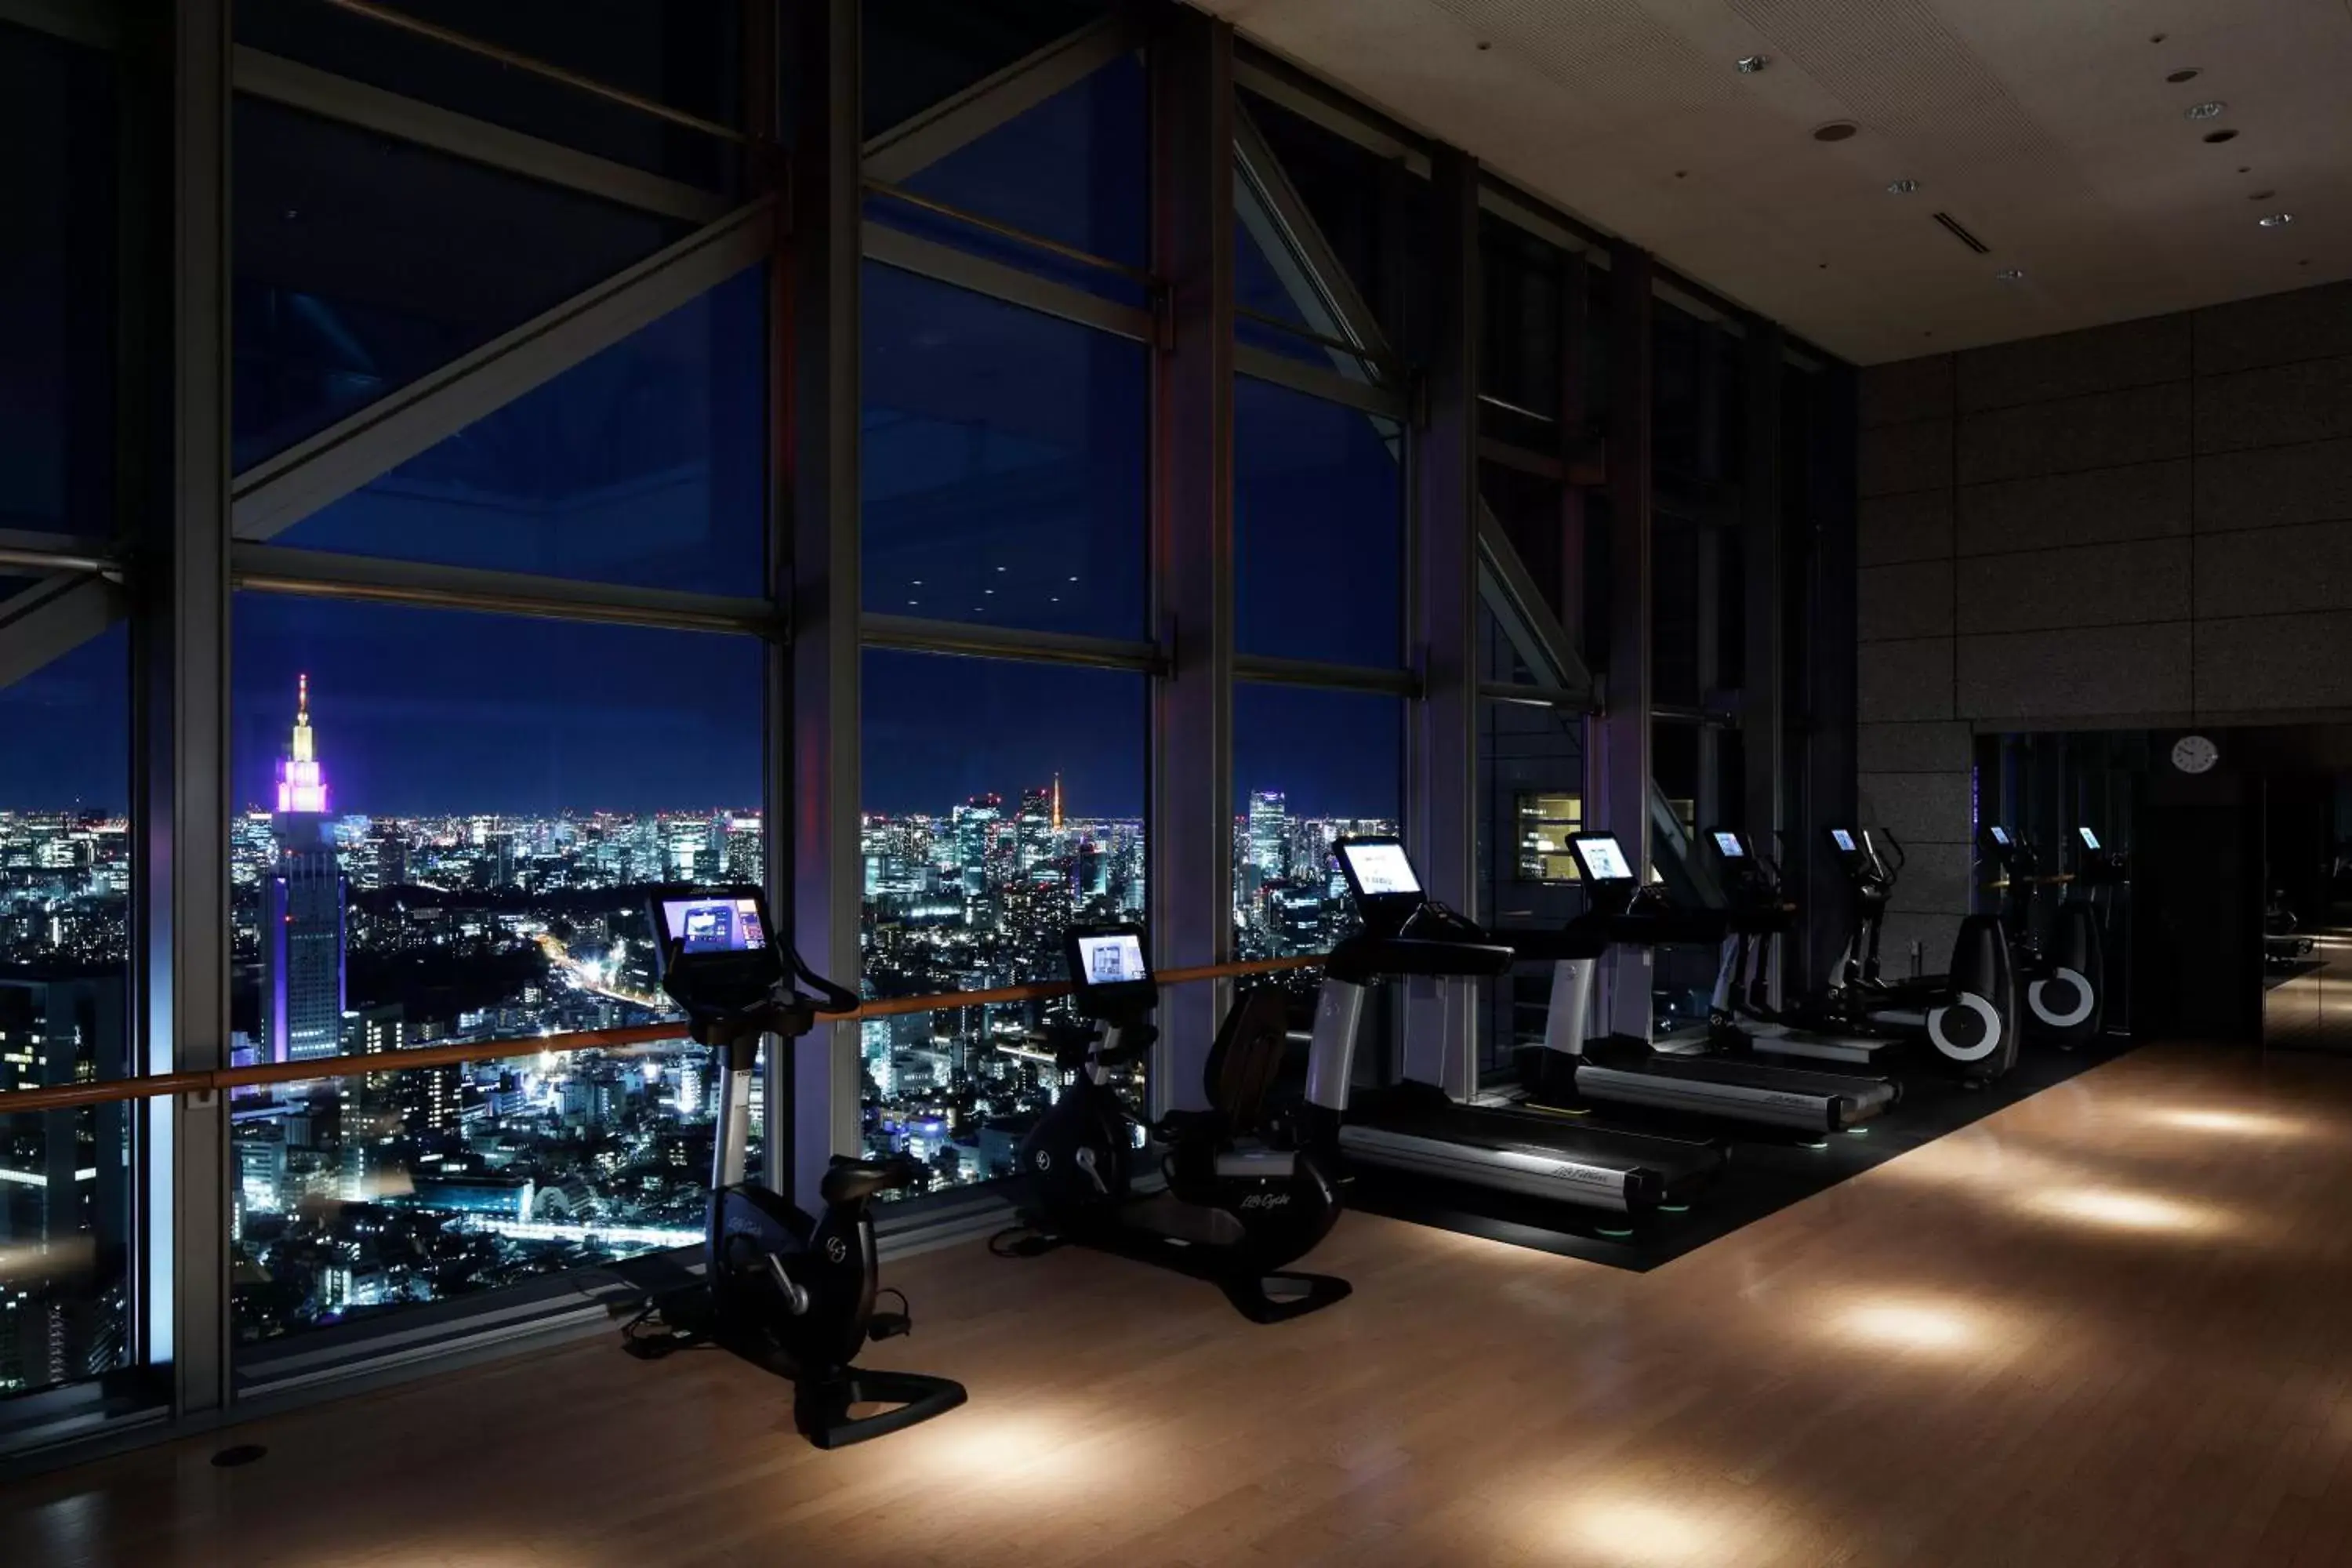 Fitness centre/facilities, Fitness Center/Facilities in Park Hyatt Tokyo